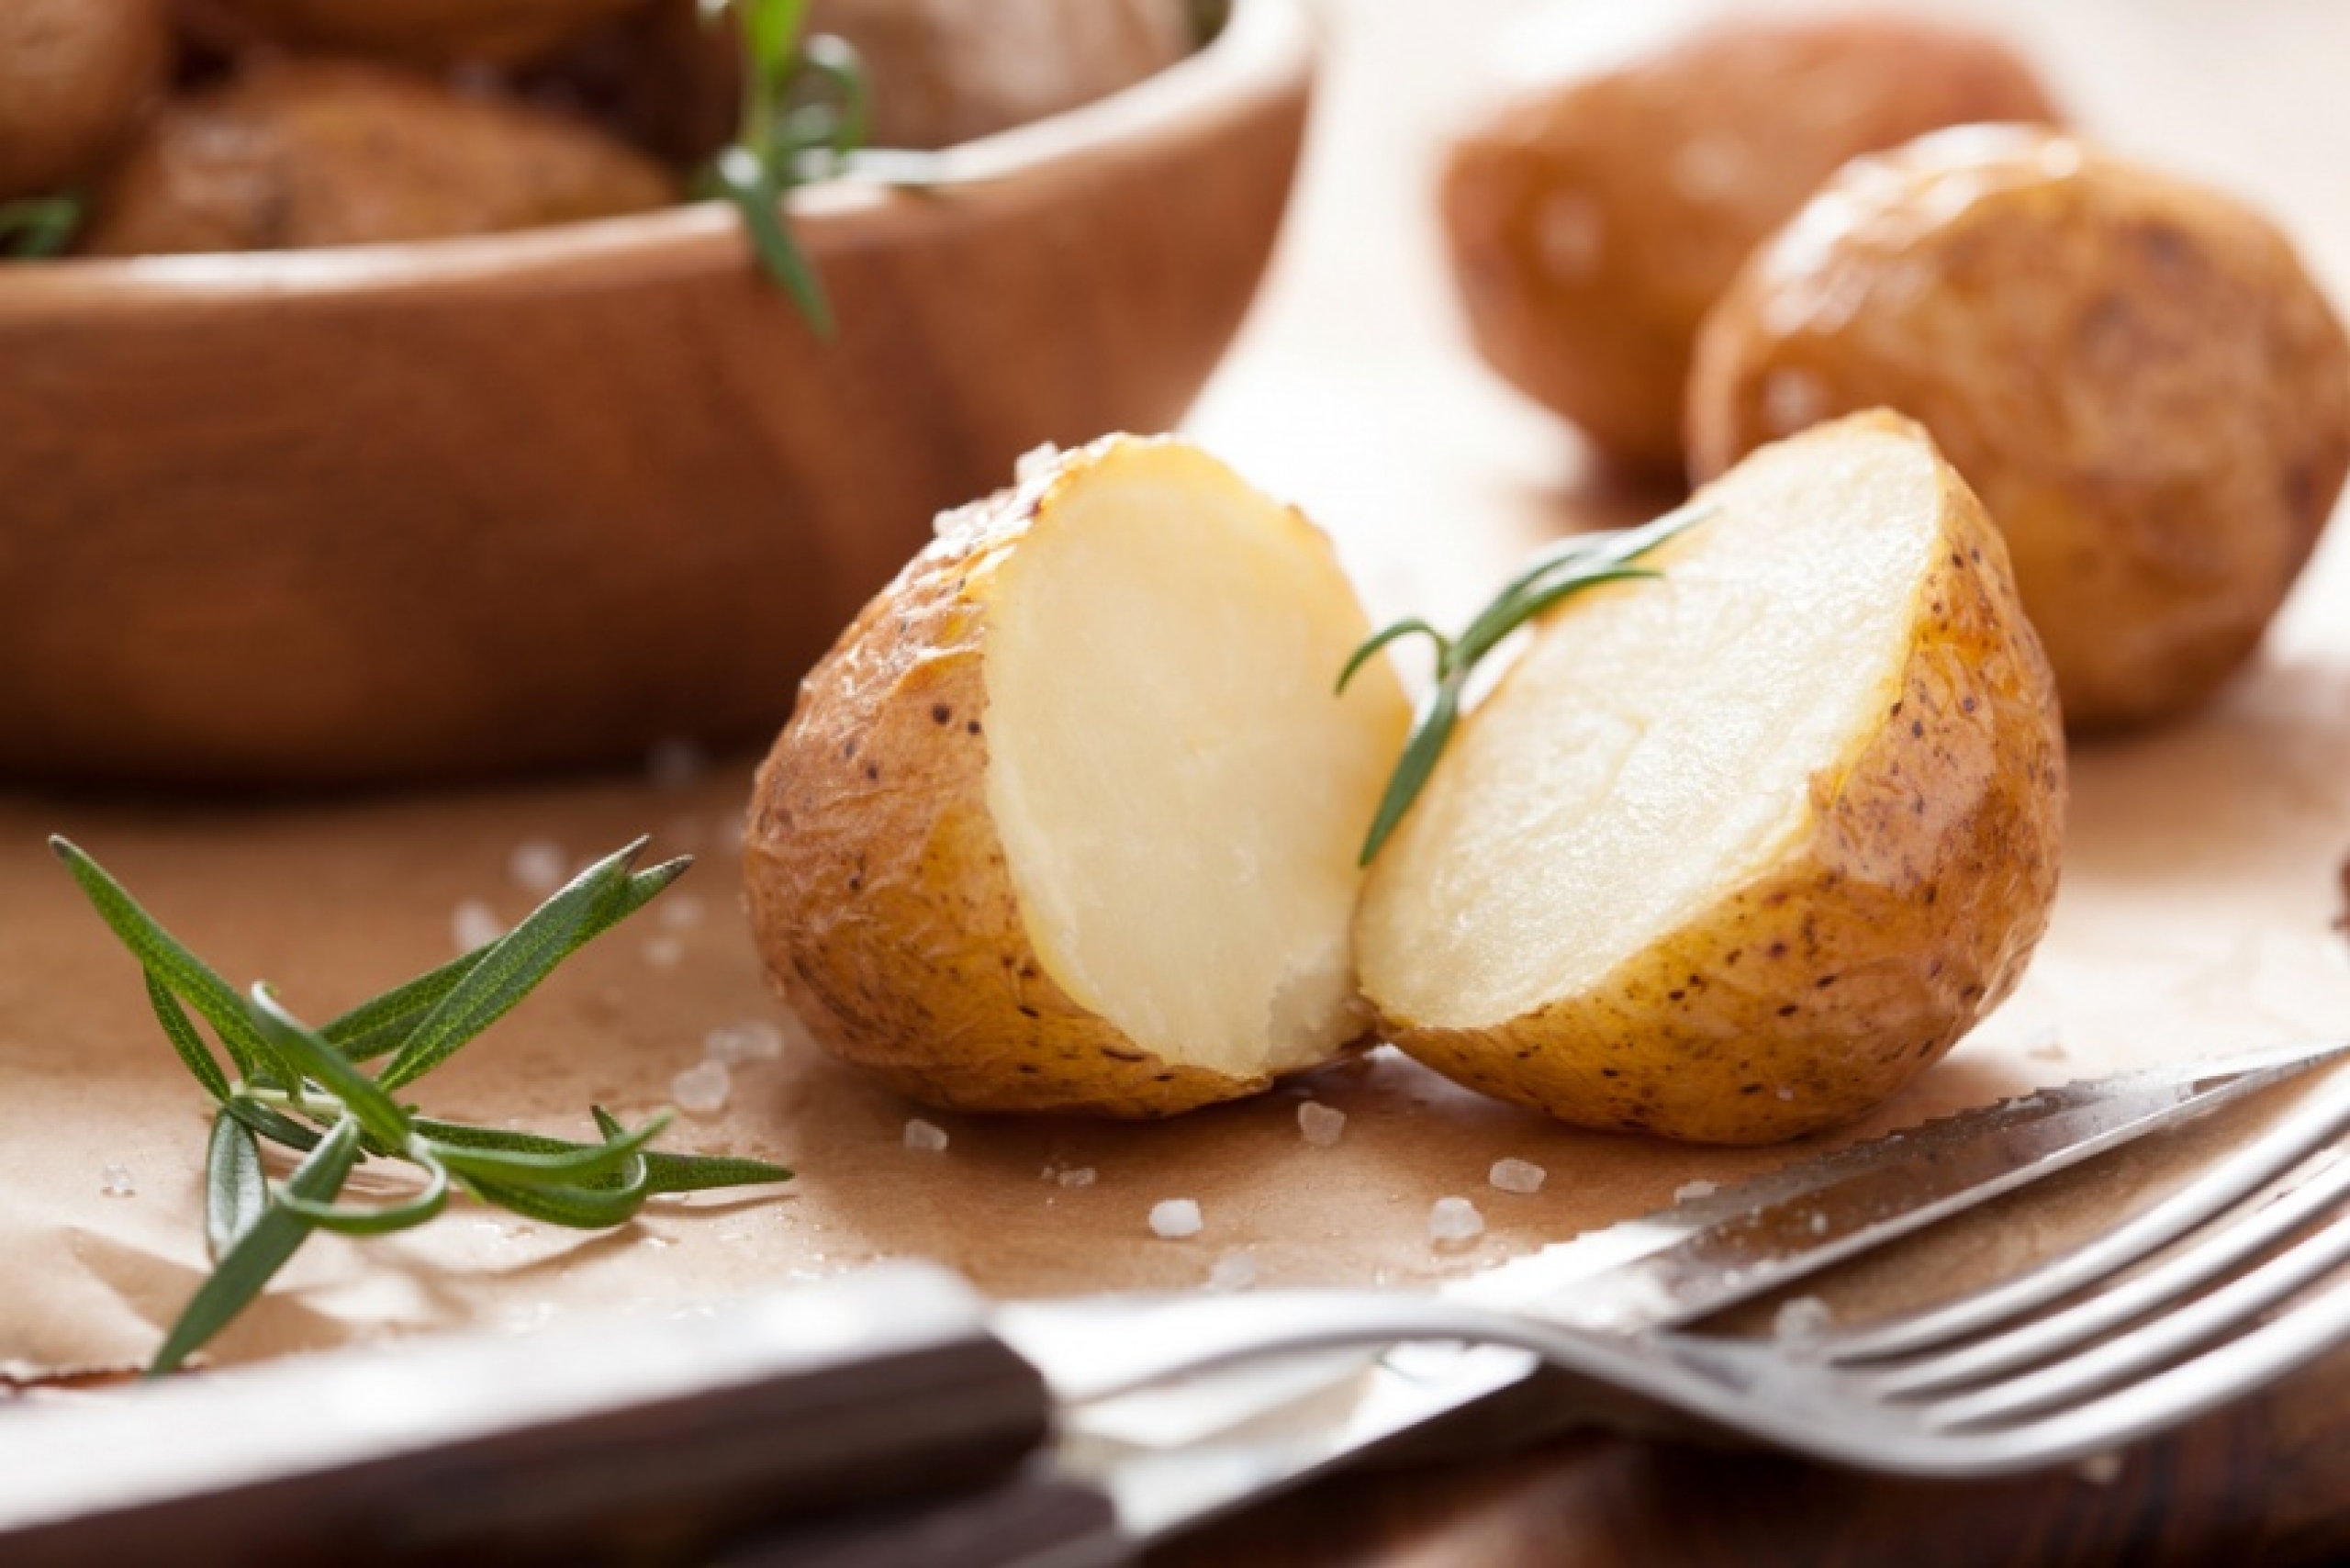 Картофель и диета: как не переступить грань совместимости